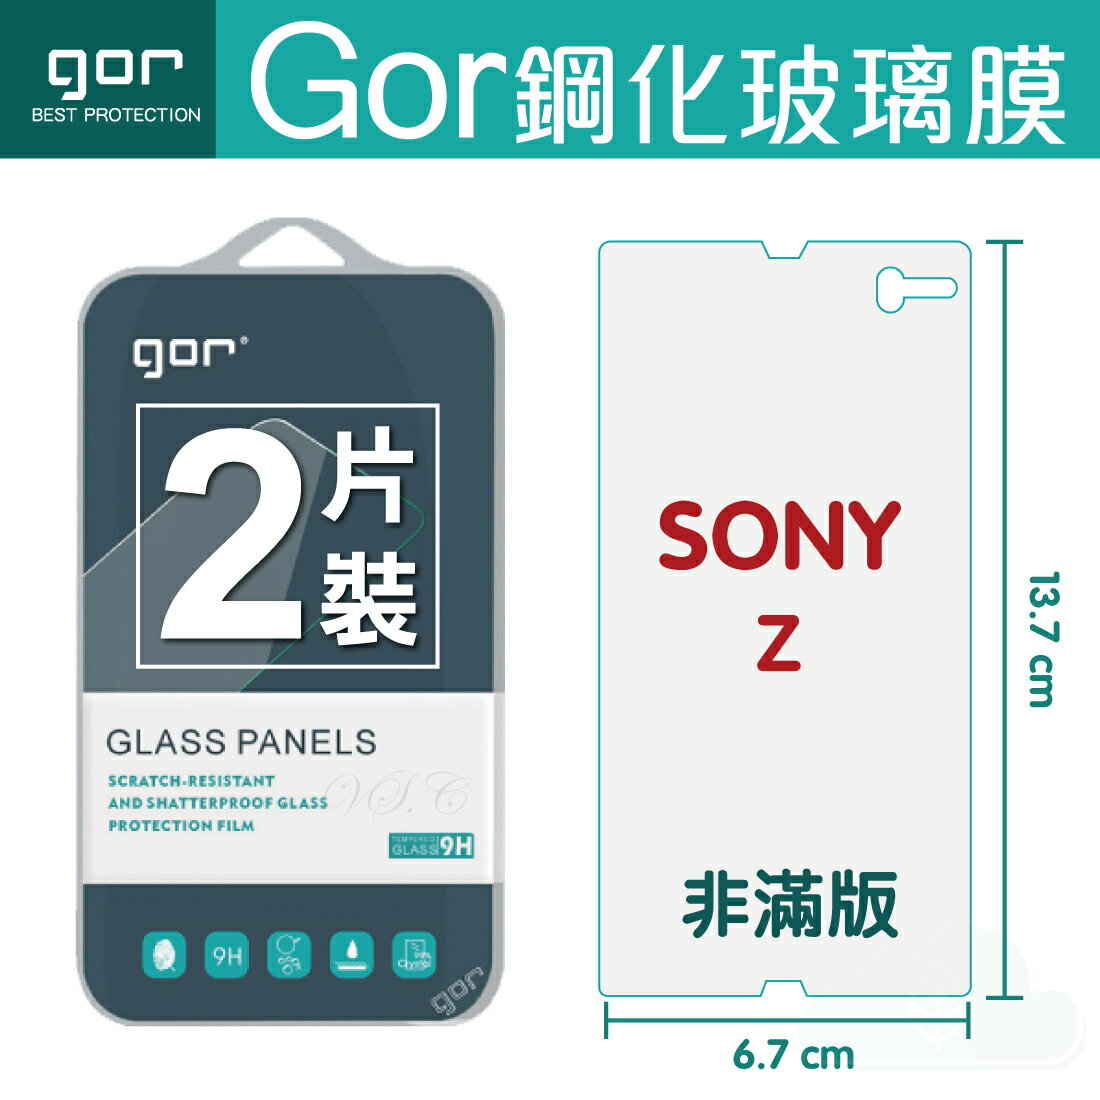 【SONY】GOR 9H Xperia Z (C6602) 鋼化 玻璃 保護貼 全透明非滿版 兩片裝【APP下單最高22%回饋】